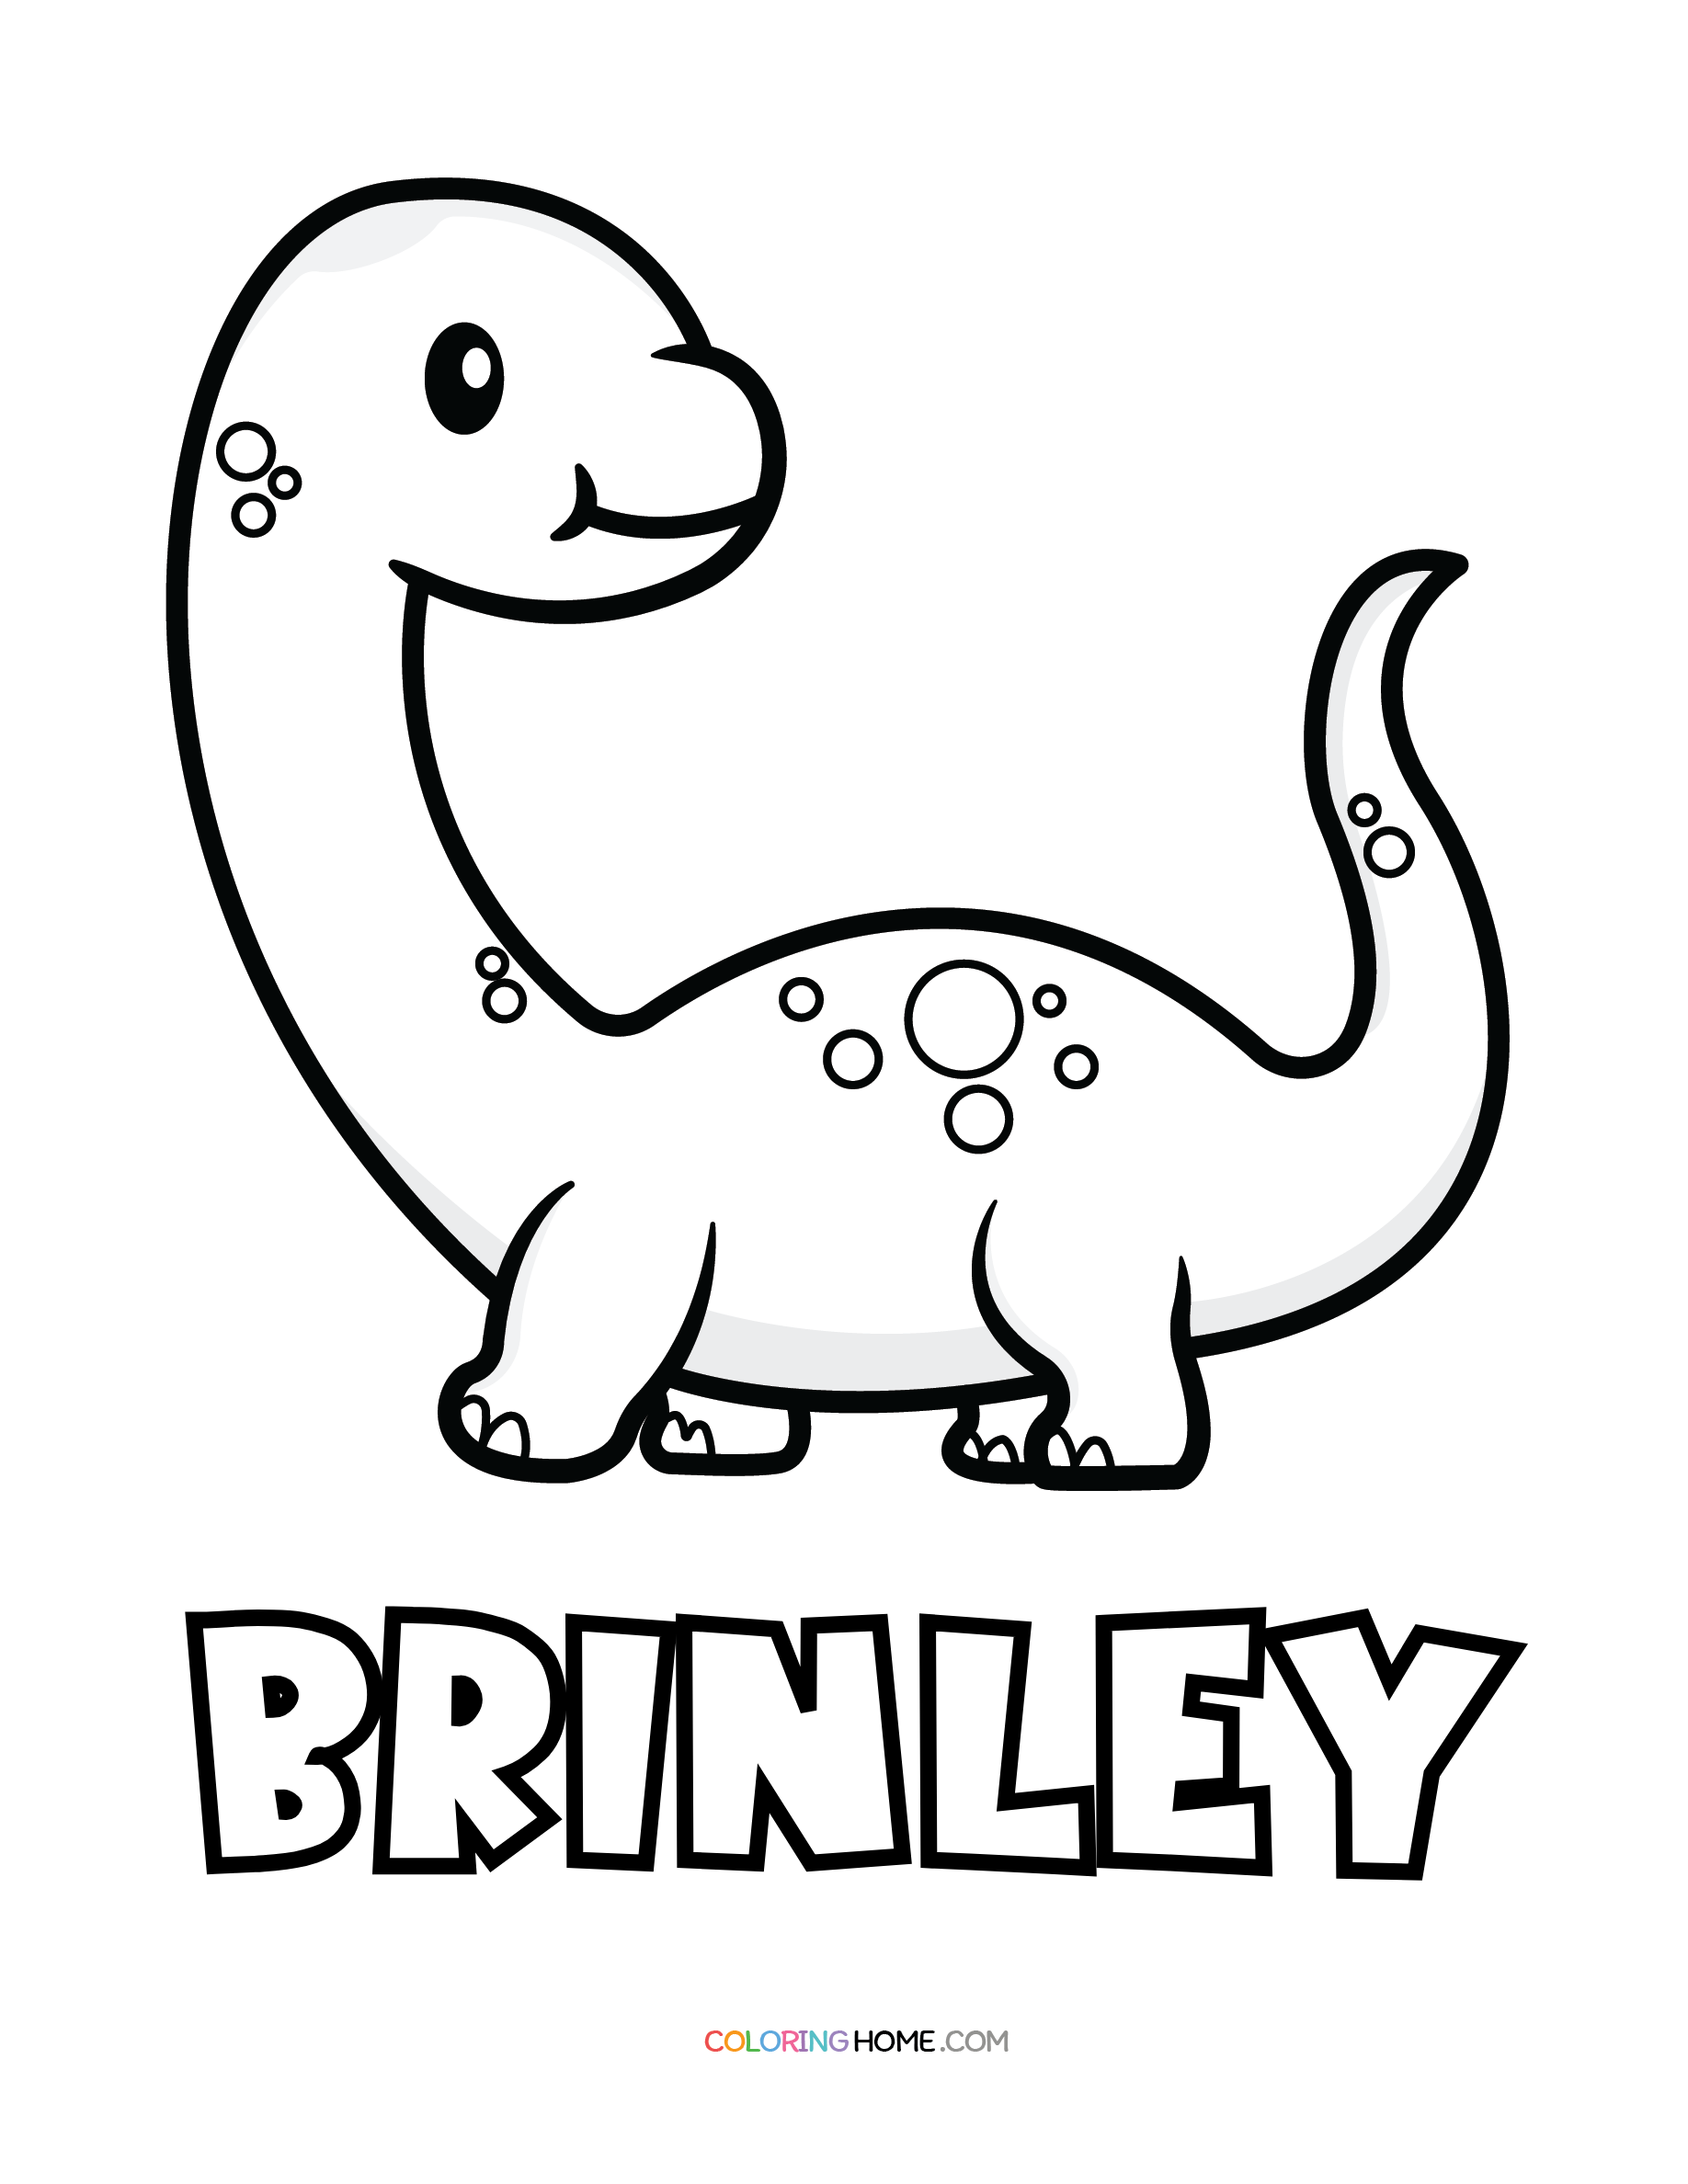 Brinley dinosaur coloring page